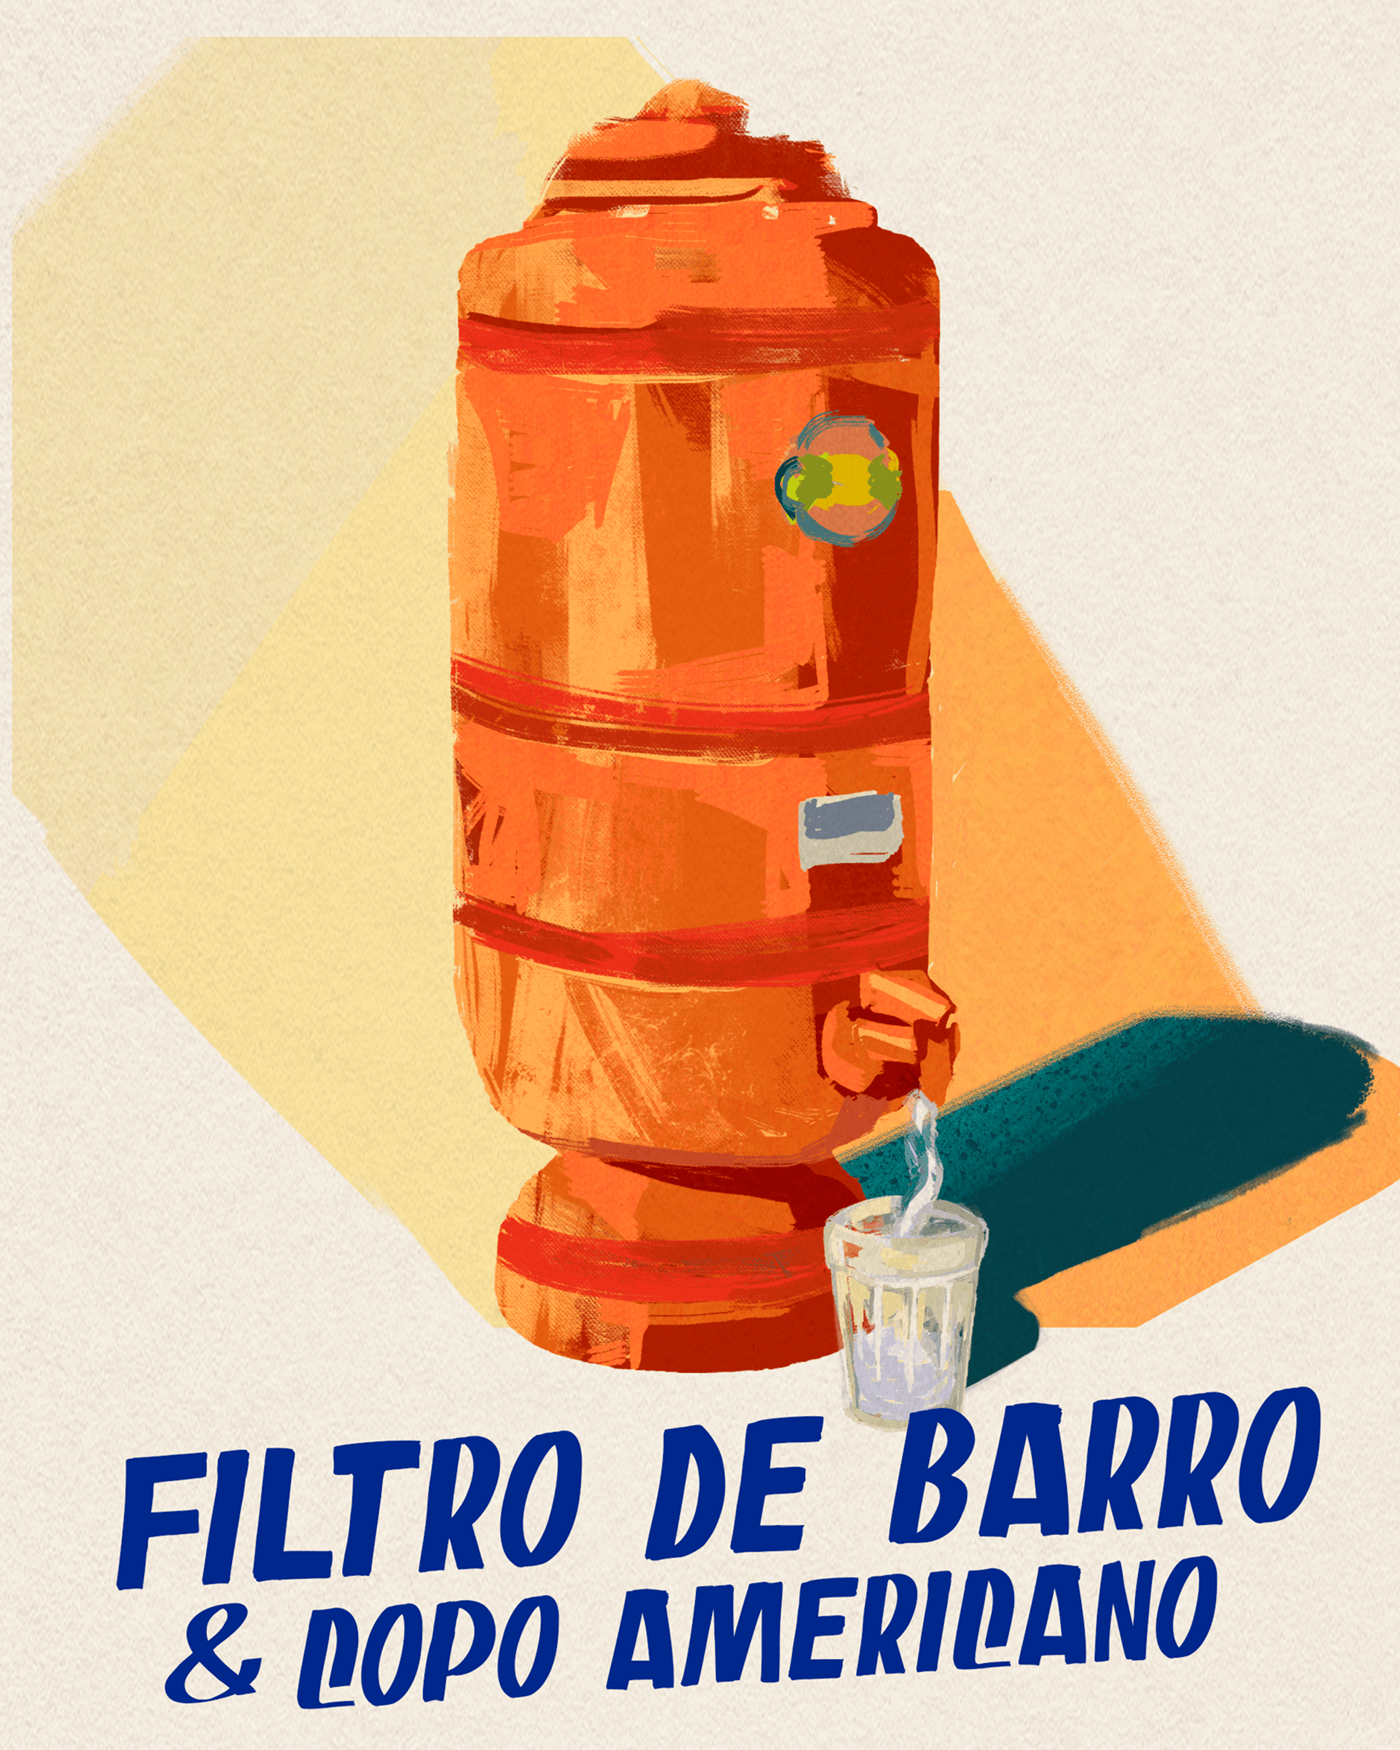 Ilustração Brasil arte copo americano bar Filtro de barro